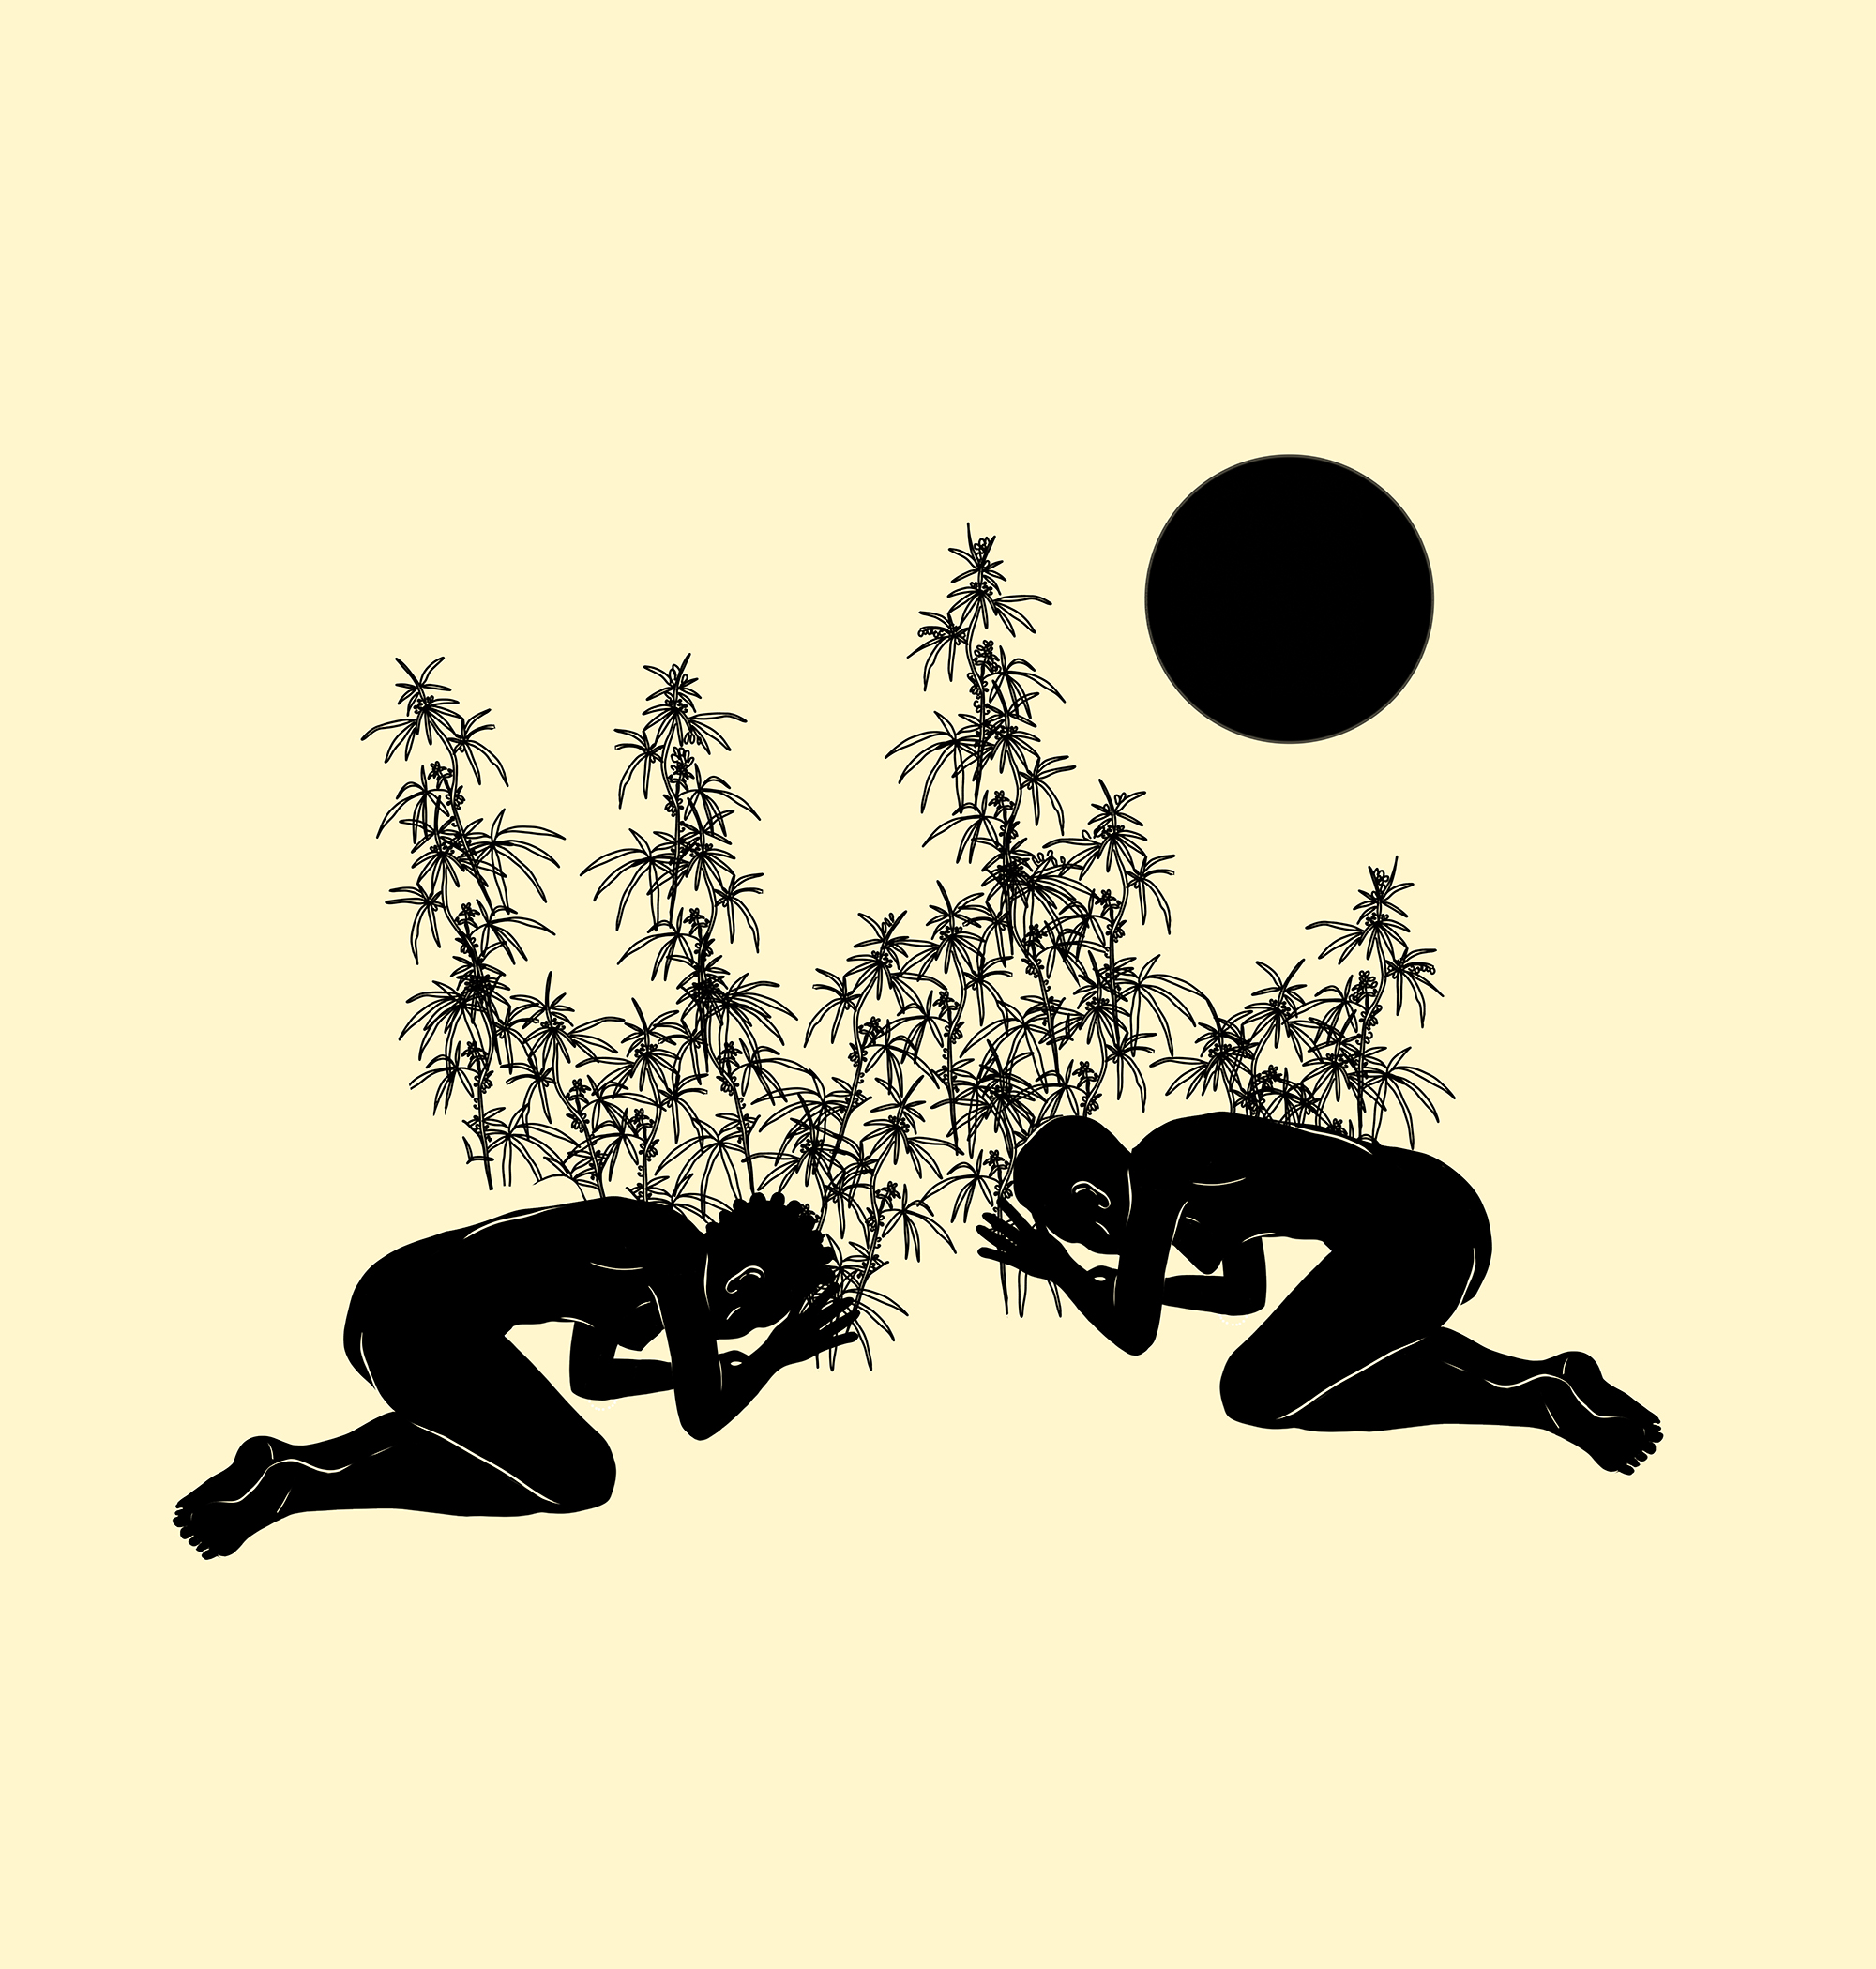 Uso sagrado da cannabis